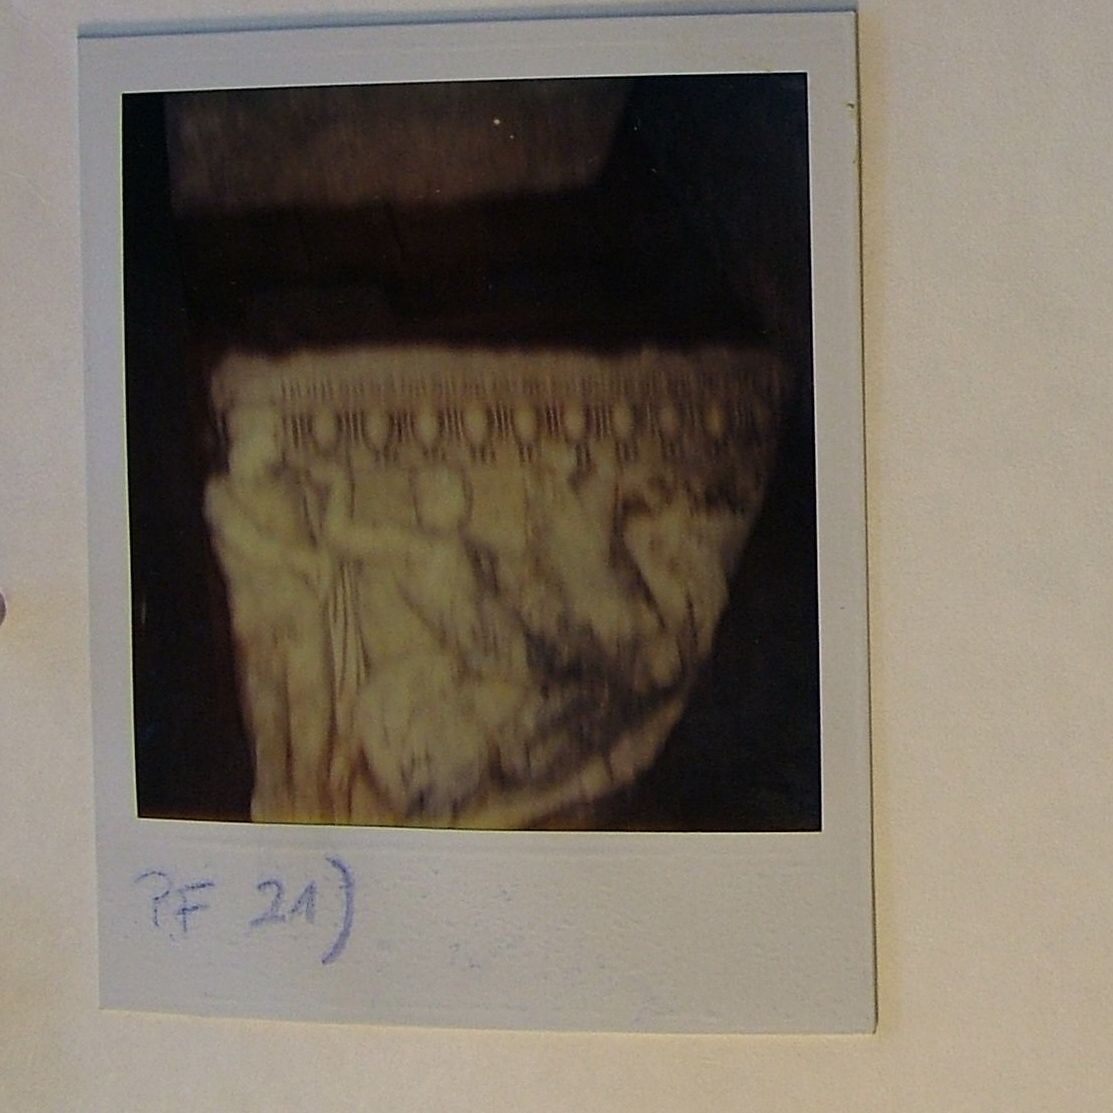 Ρωμαϊκή σαρκοφάγος, κατασχεθέν υλικό του Τζιανφράνκο Μπεκίνα. Επαναπατρίστηκε στην Ελλάδα το Φεβρουάριο του 2017